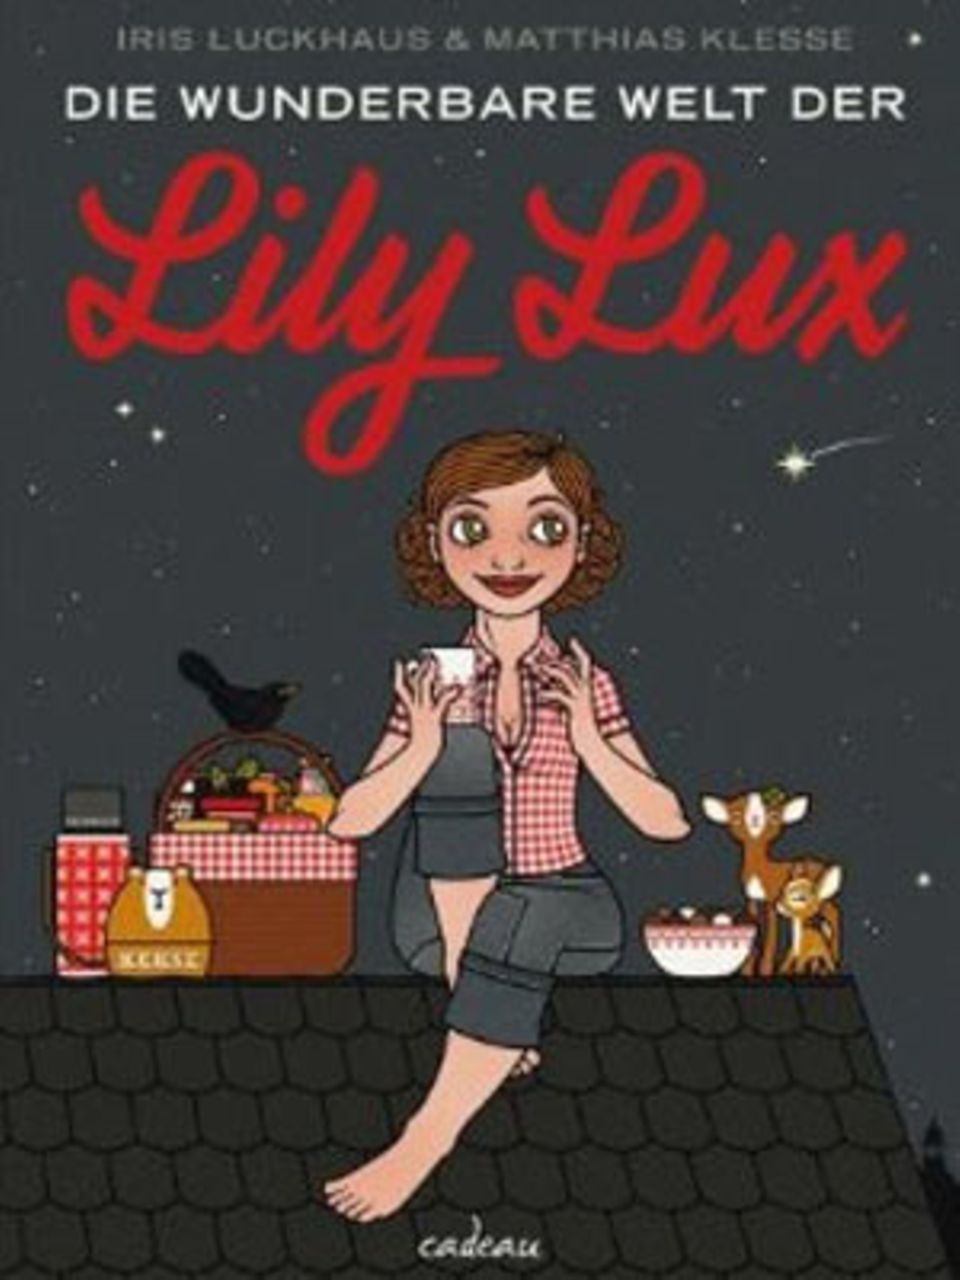 Fans von Amélie und ihrer fabelhaften Welt werden Lily Lux lieben! Das liebevoll gestaltete Buch "Die wunderbare Welt der Lily Lux" zeigt eindrucksvoll, dass an jedem Tag etwas Besonderes passieren kann und an jeder Straßenecke eine Sehenswürdigkeit lauert. Von cadeau, um 15 Euro.